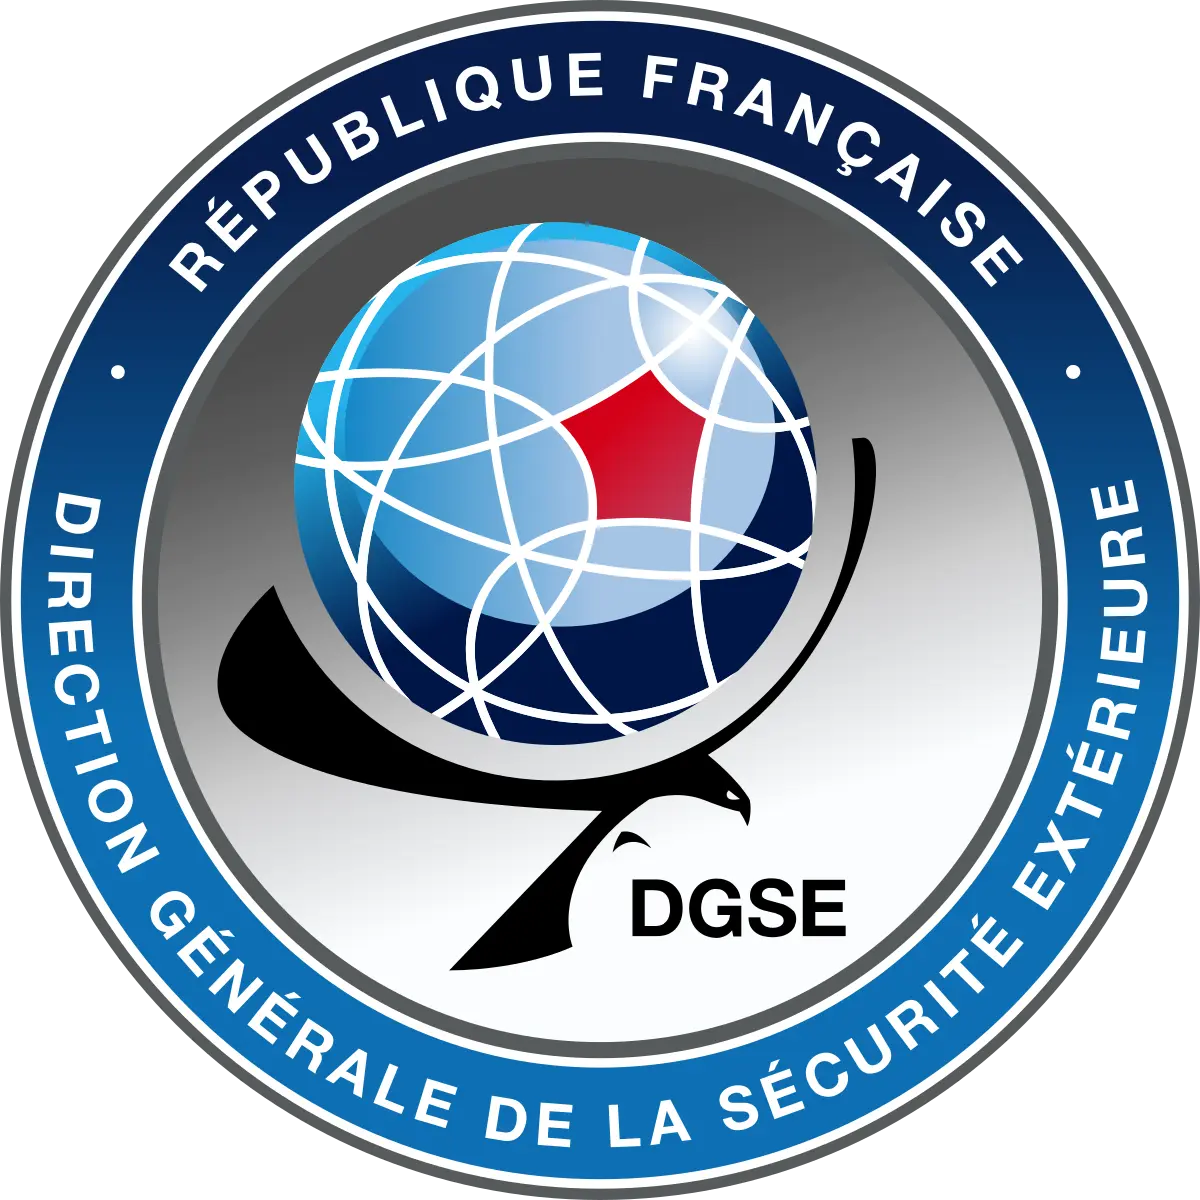 agencia de inteligencia de francia - Qué significan las siglas DGSE